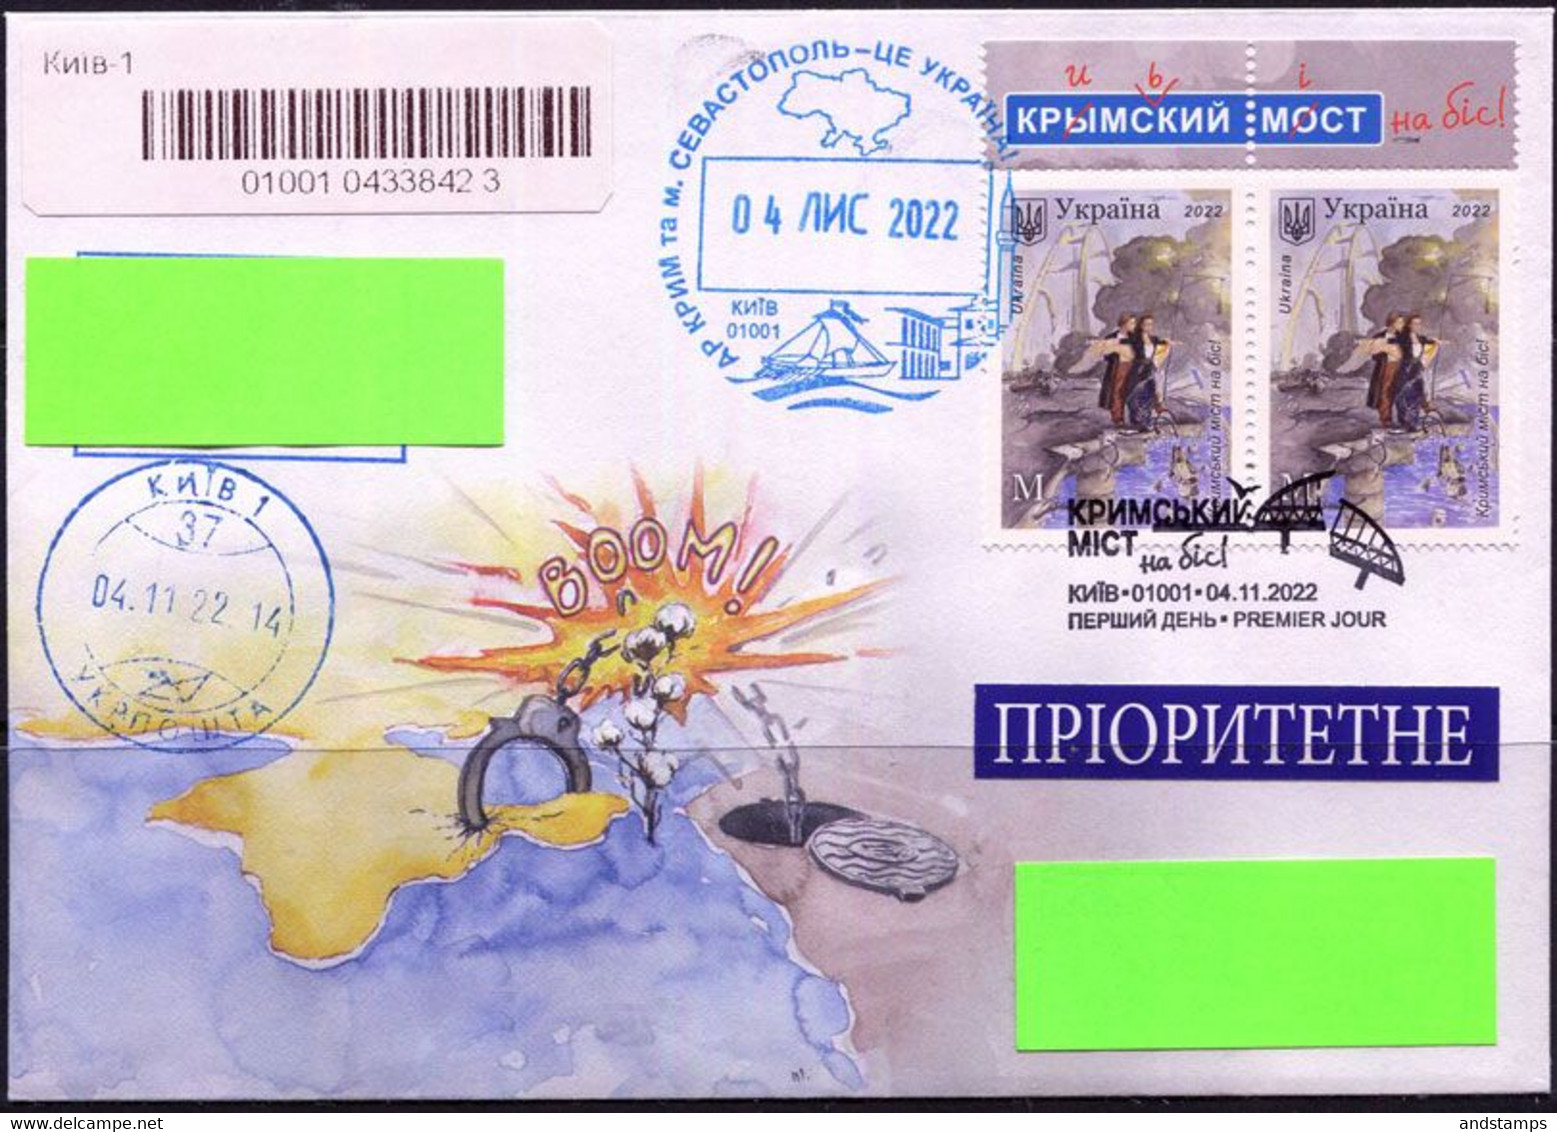 Ukraine 2022. #2011 FDC. "Crimean Bridge". (В05) - Bruggen